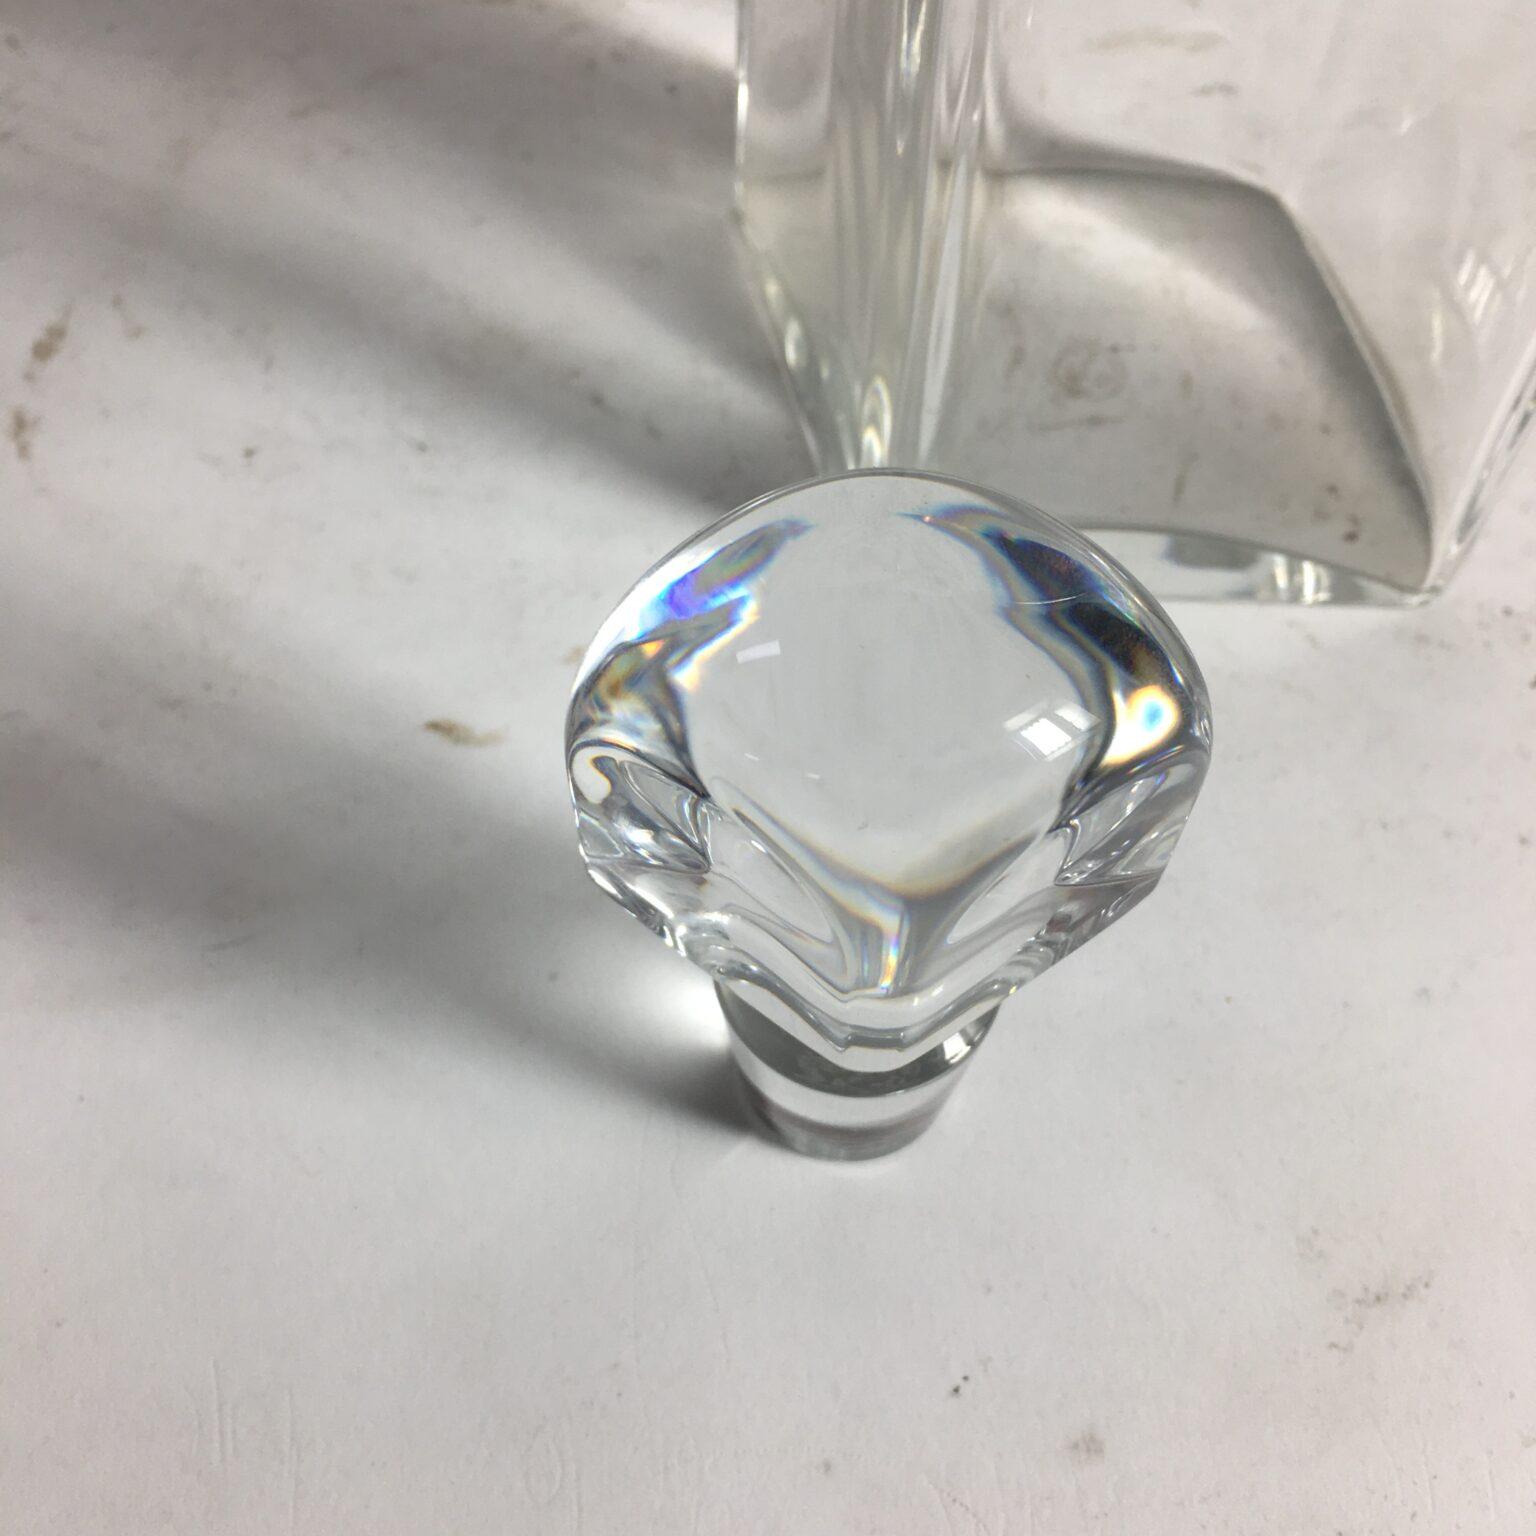 Bottiglia con tappo in cristallo di Baccarat Negozio Cambiago